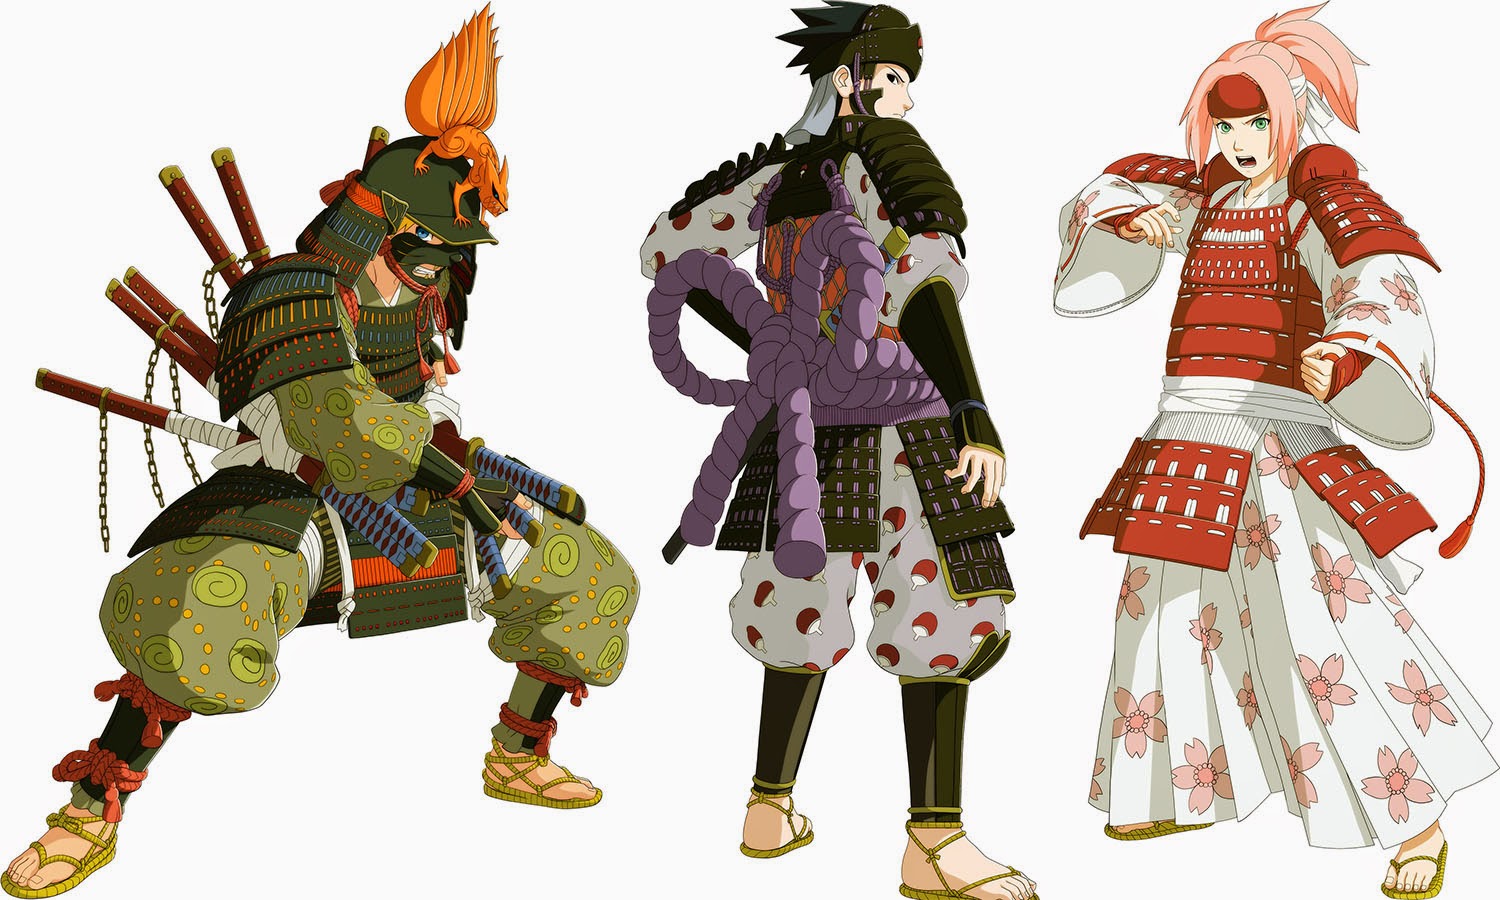 Criador de Naruto troca ninjas por samurais em nova série - REDEPARÁ